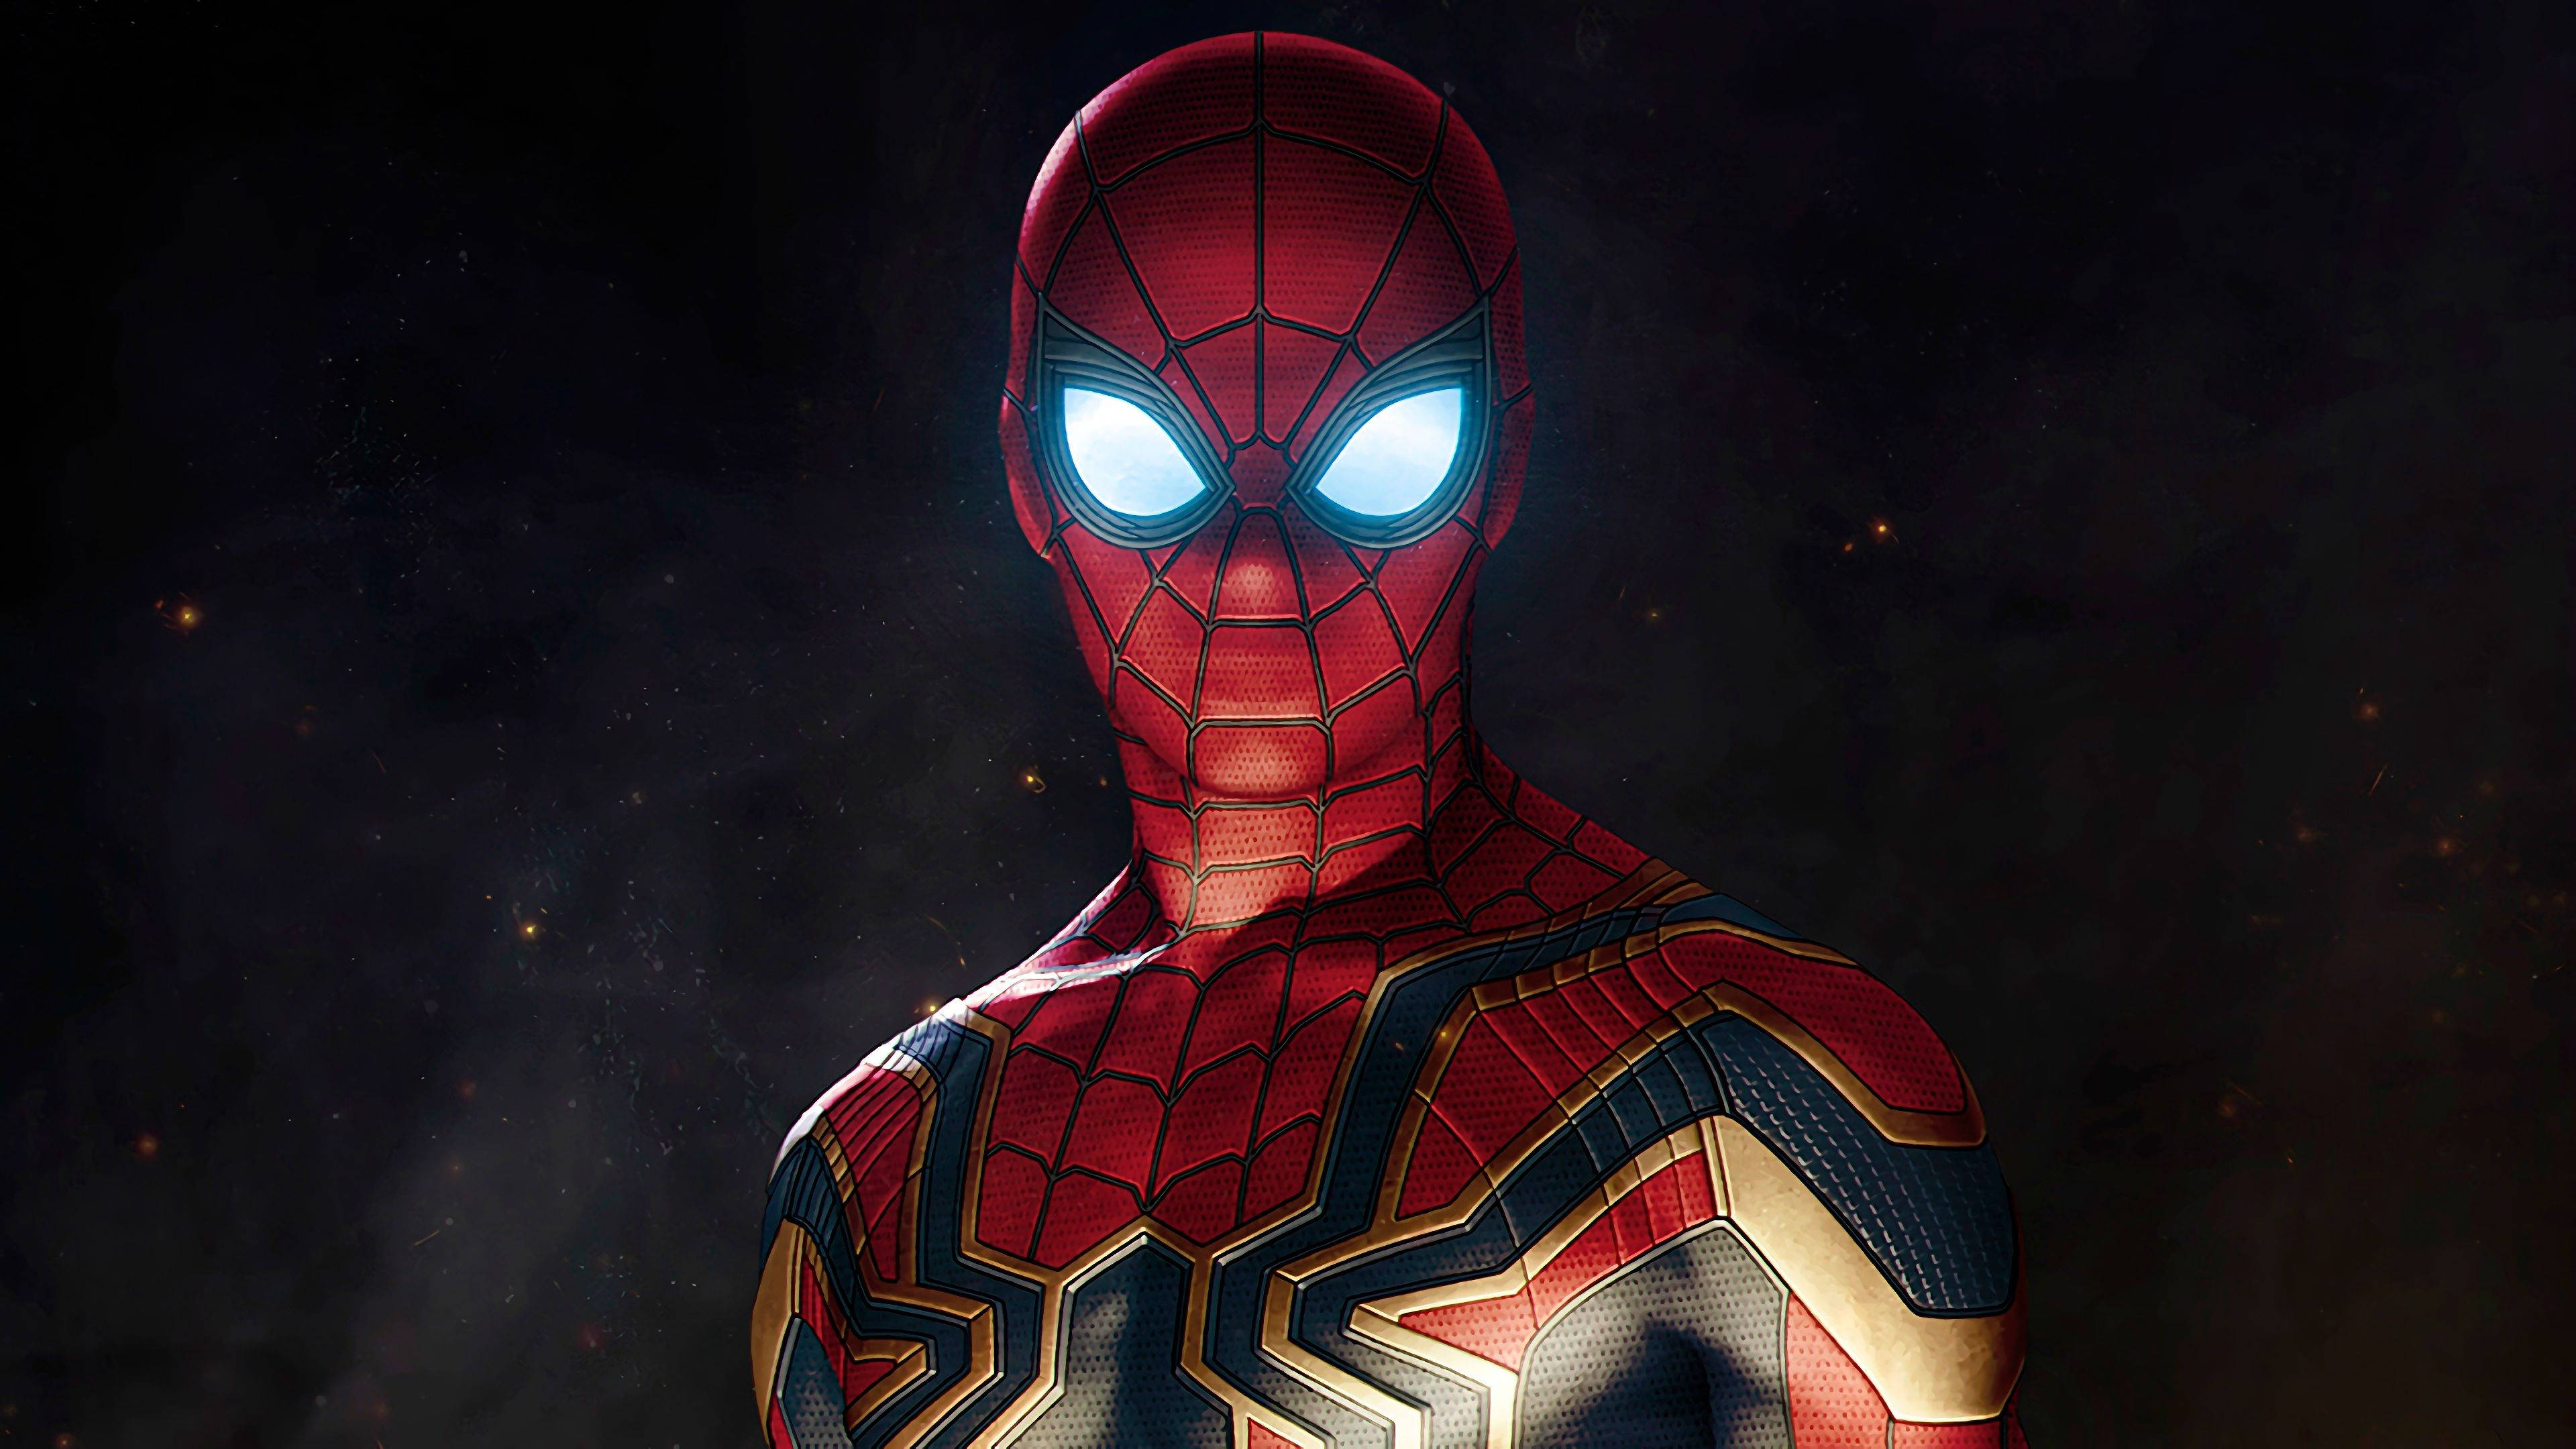 Download Spiderman Of Avengers Infinity War 4k Wallpaper 